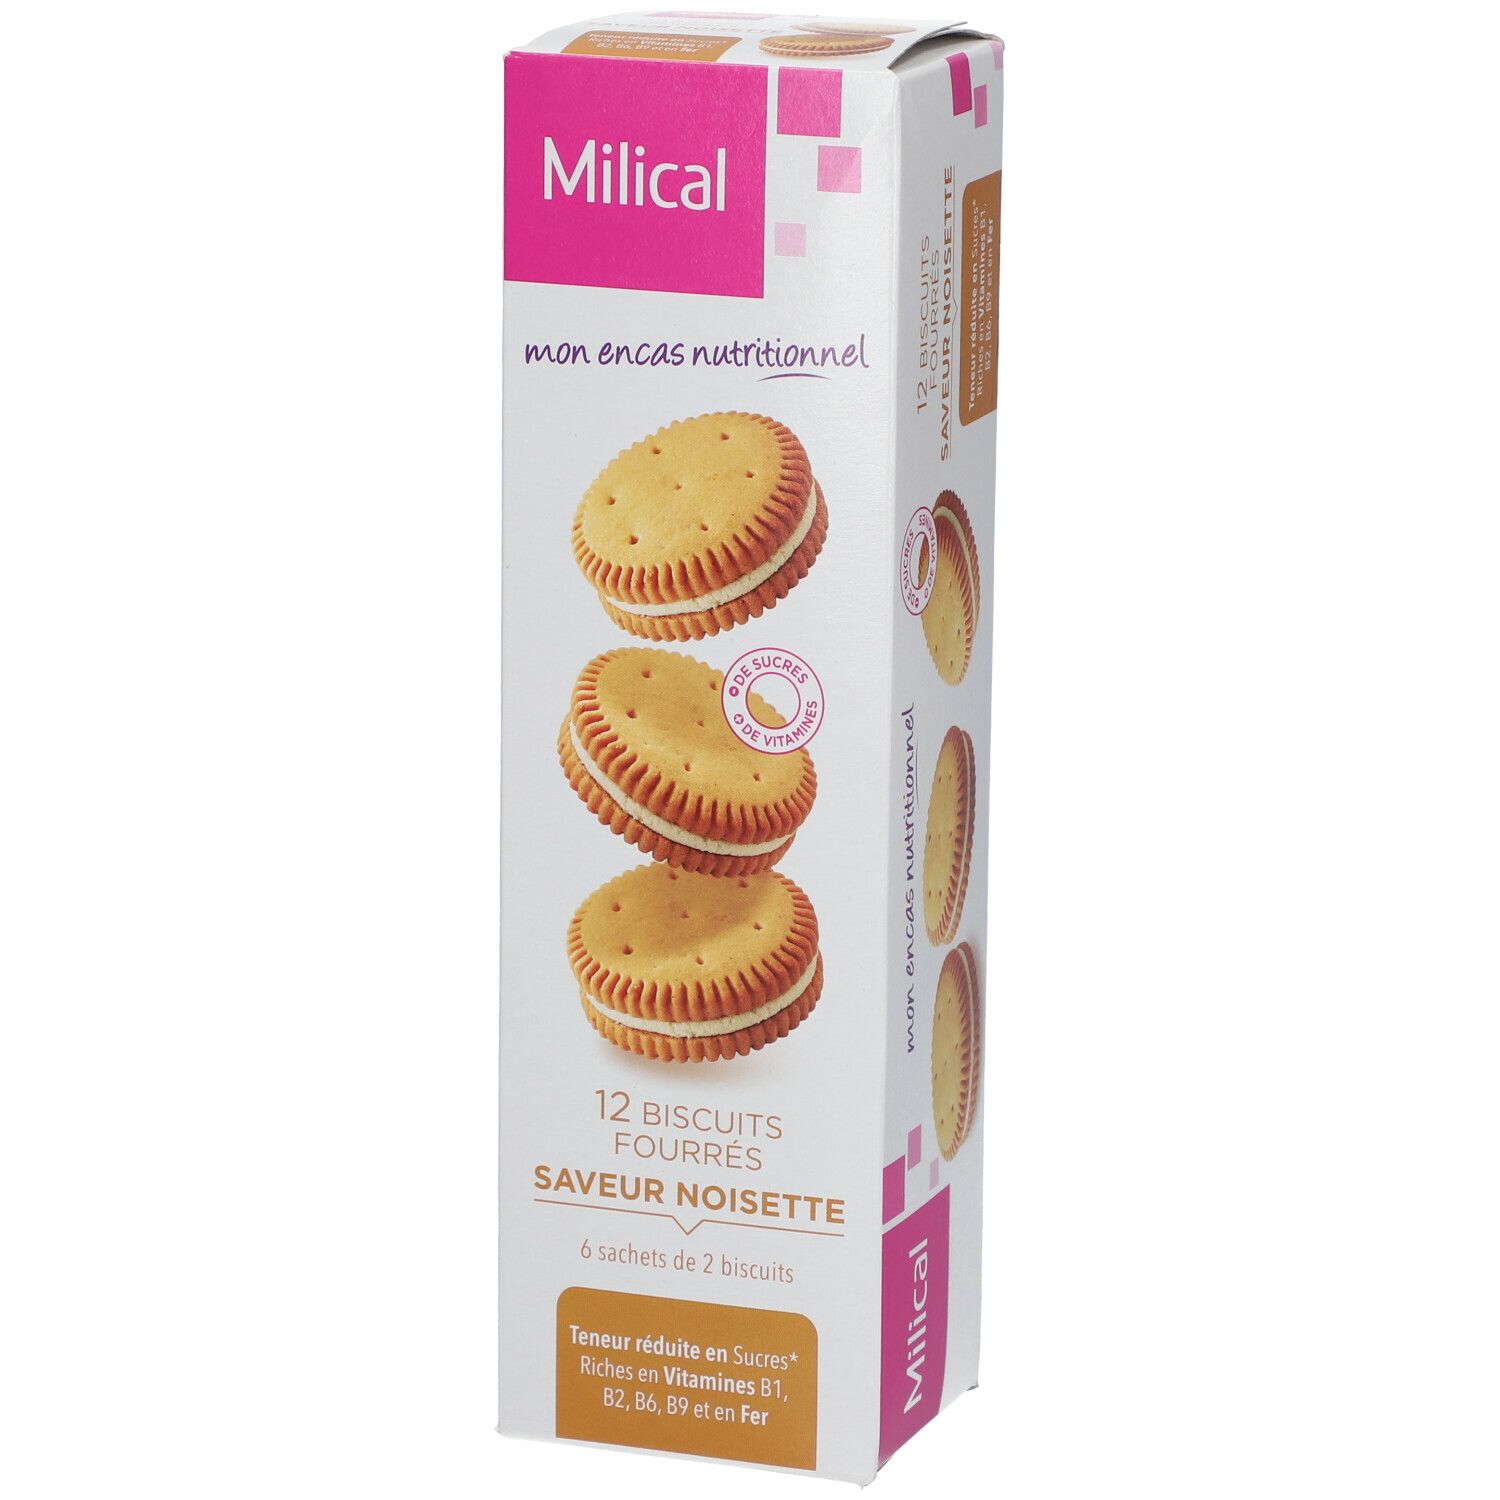 Milical Nutrition Biscuits fourrés Noisette